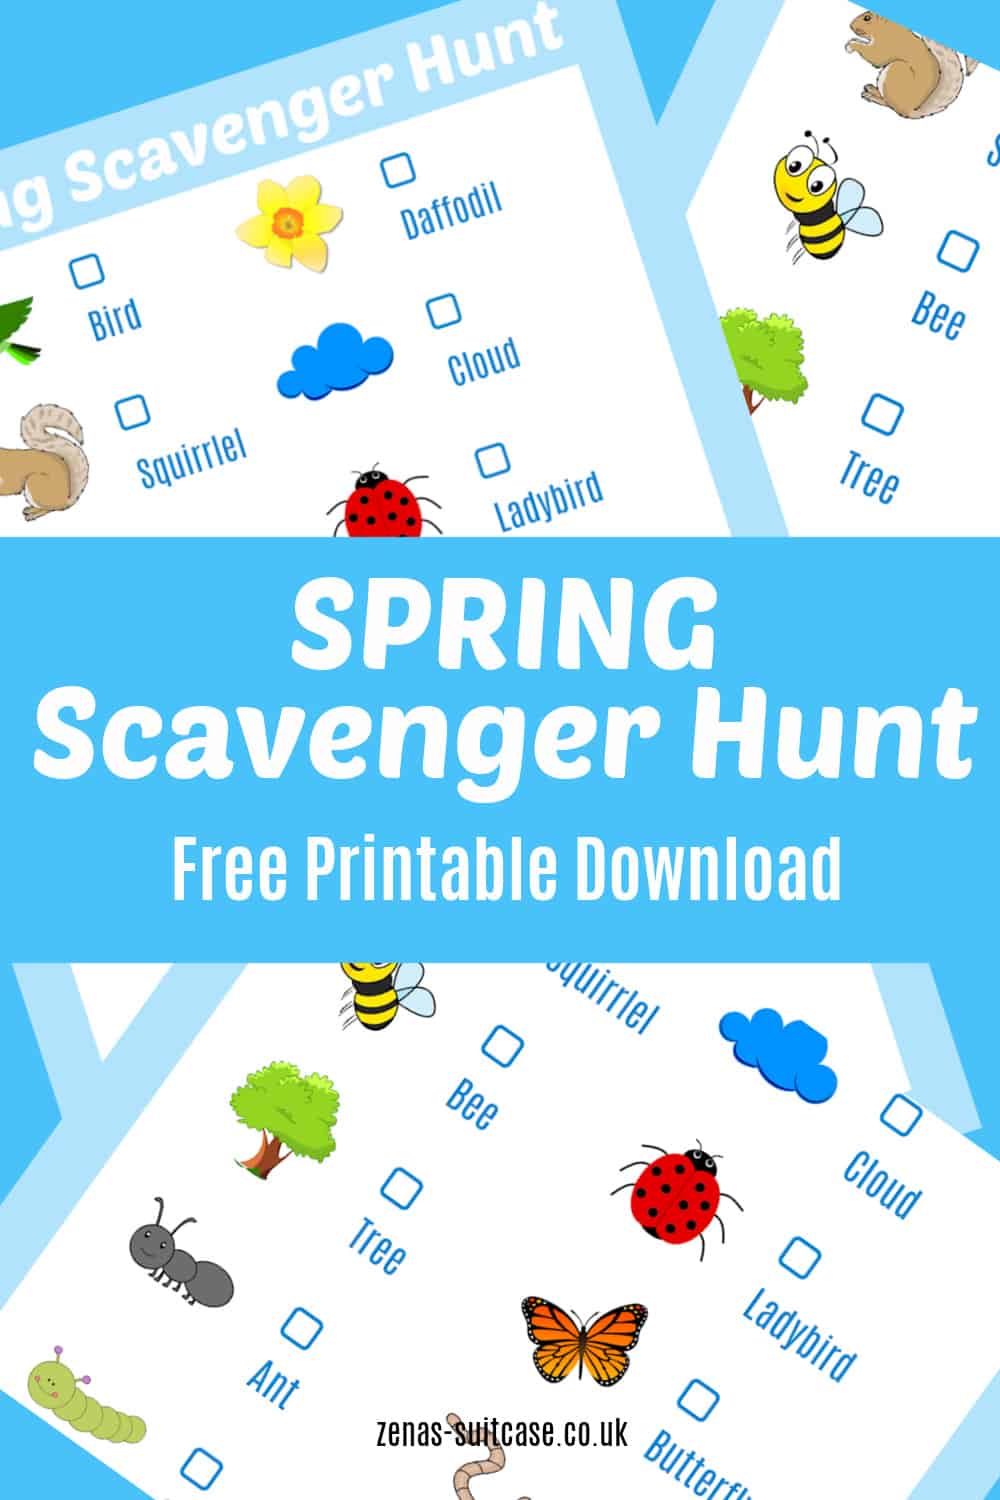 Spring Scavenger Hunt - Free printable download